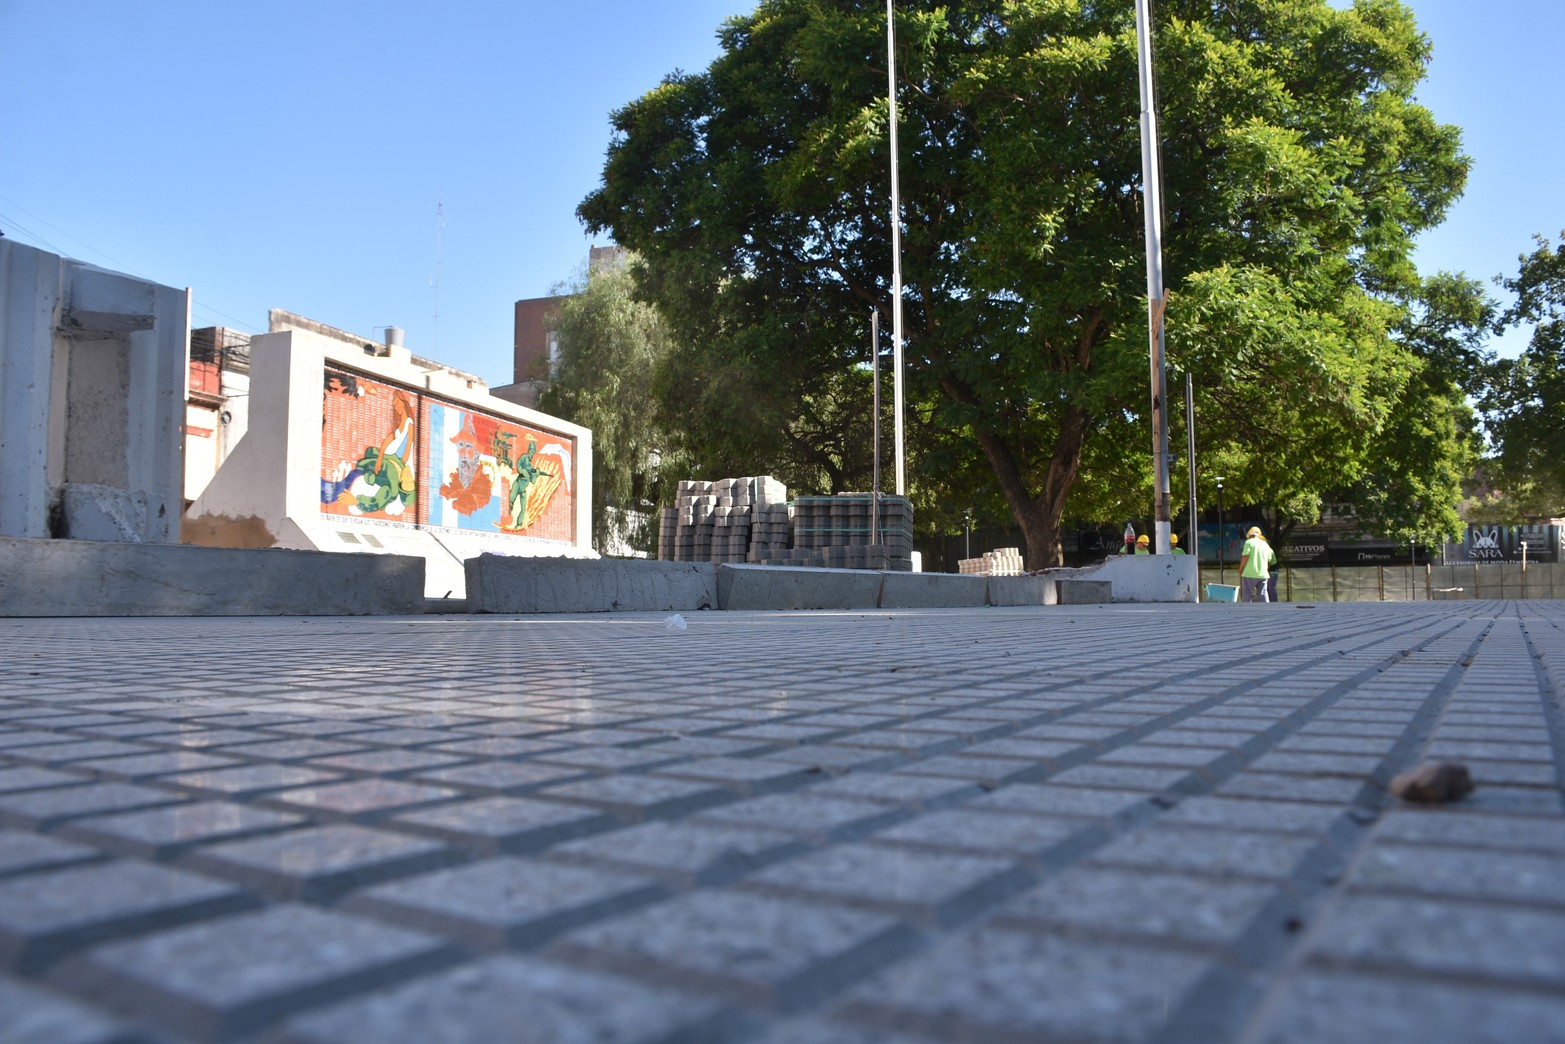 Avance de obras en Plaza del Soldado. Foto: Flavio Raina